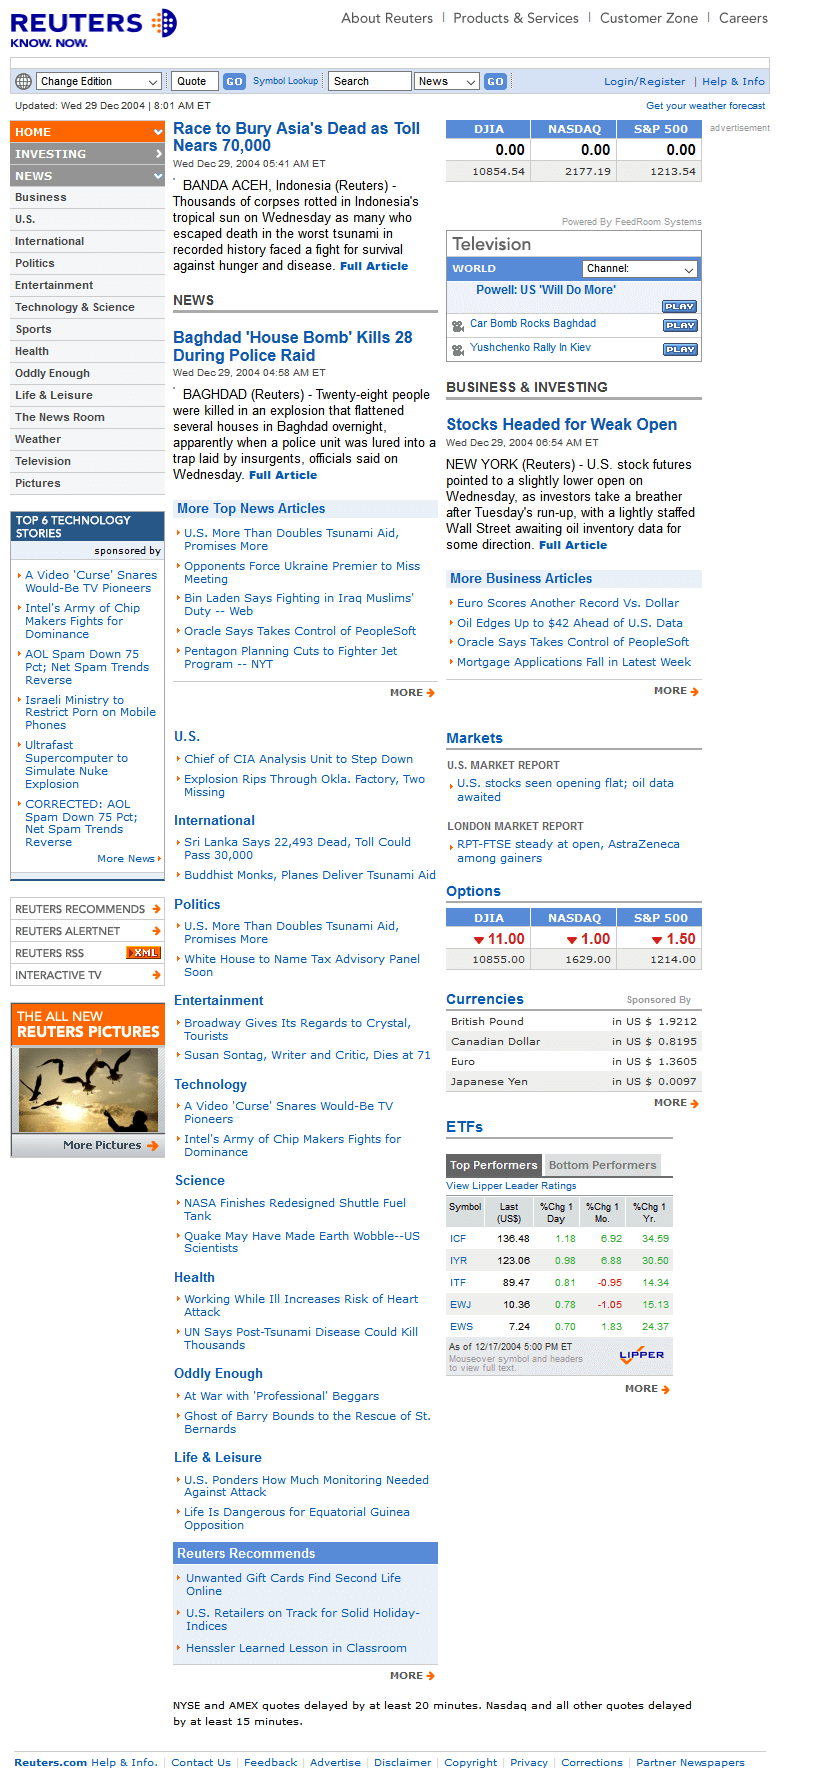 Reuters website in 2004